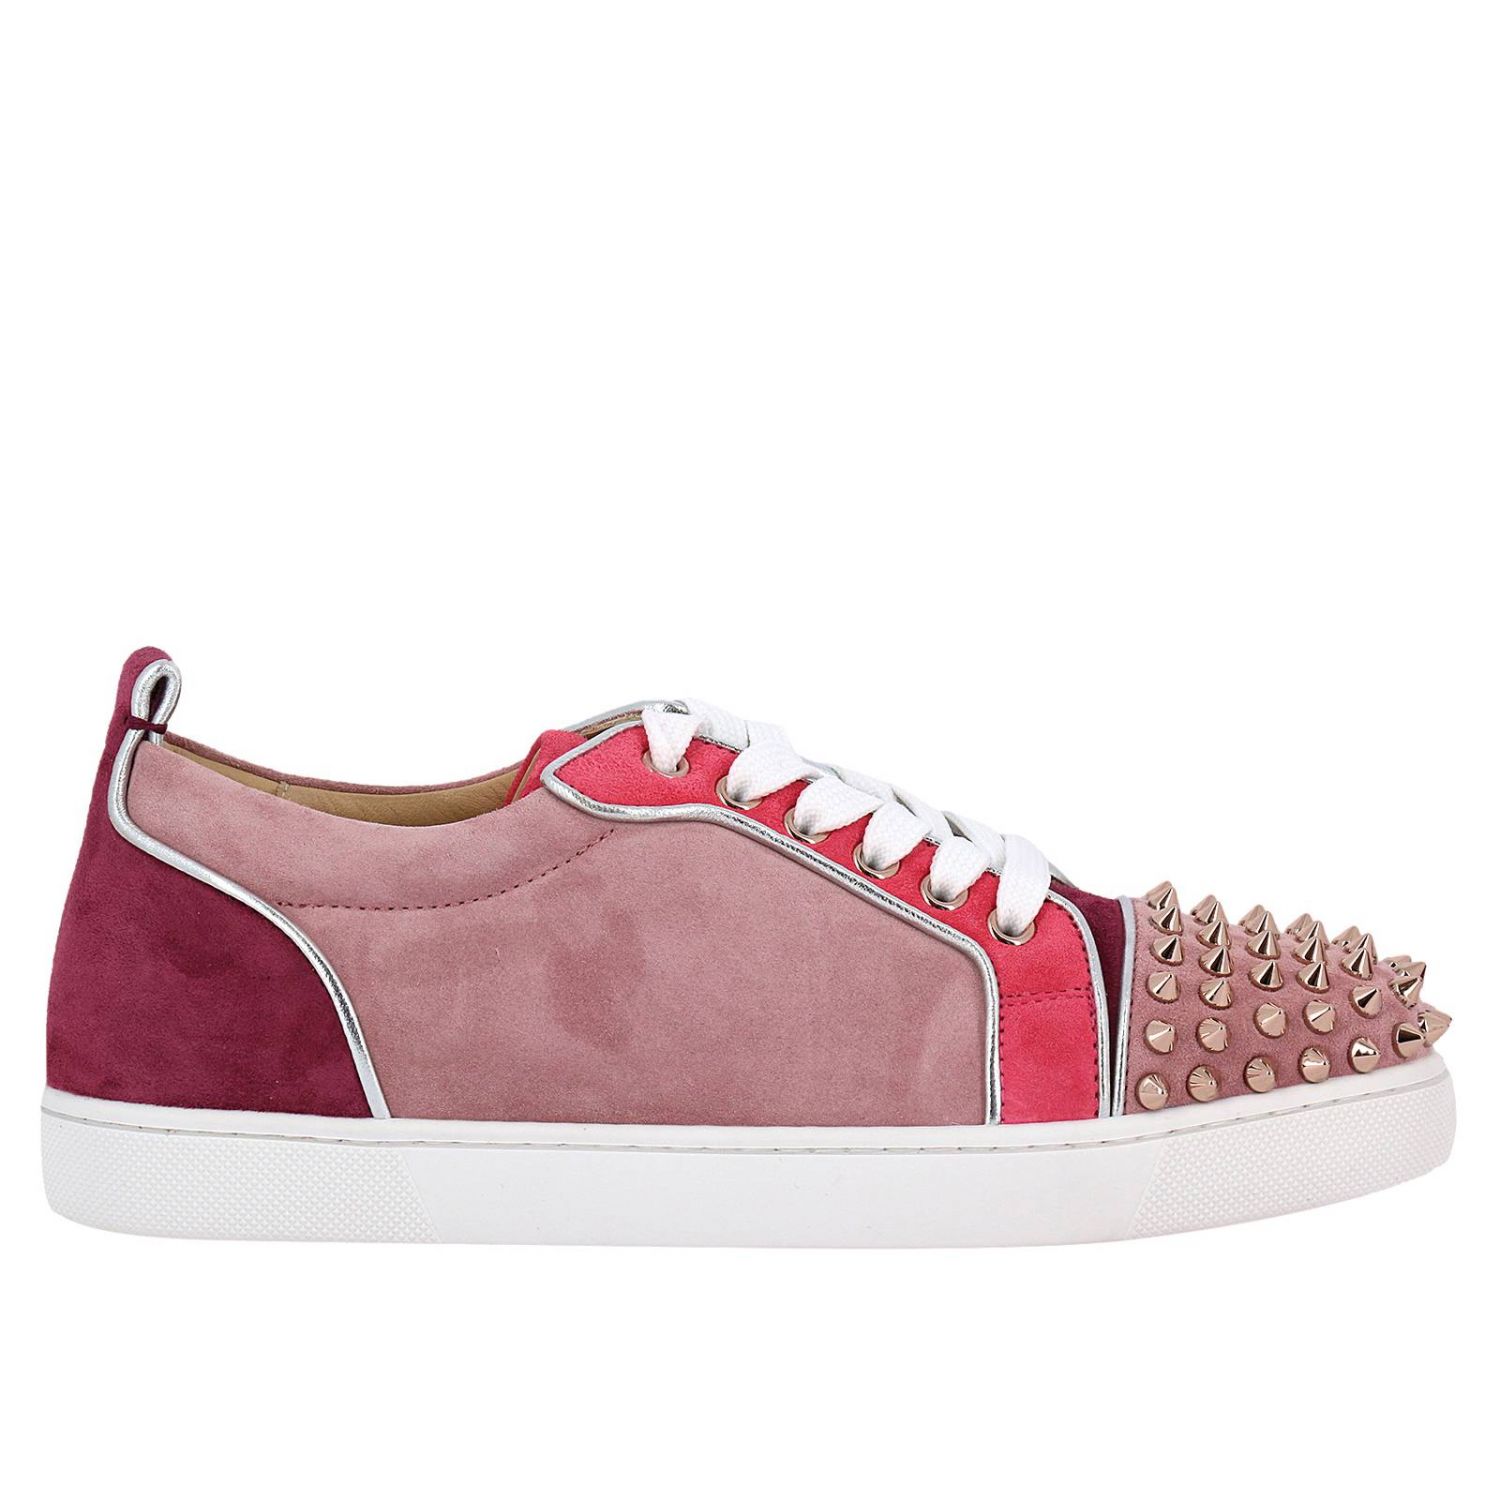 pink louboutins sneakers